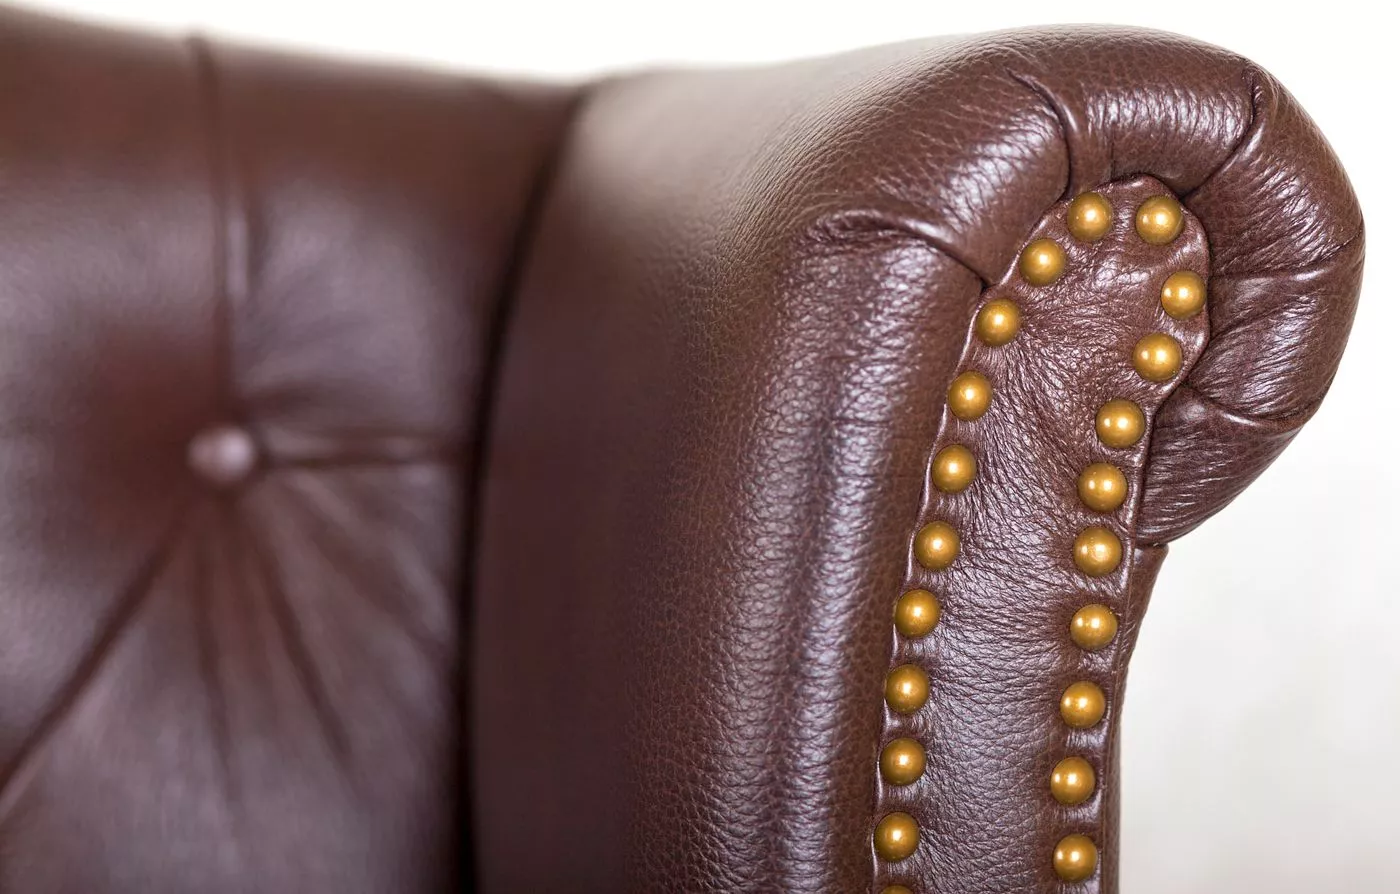 Диван кожаный Royal sofa Коричневый